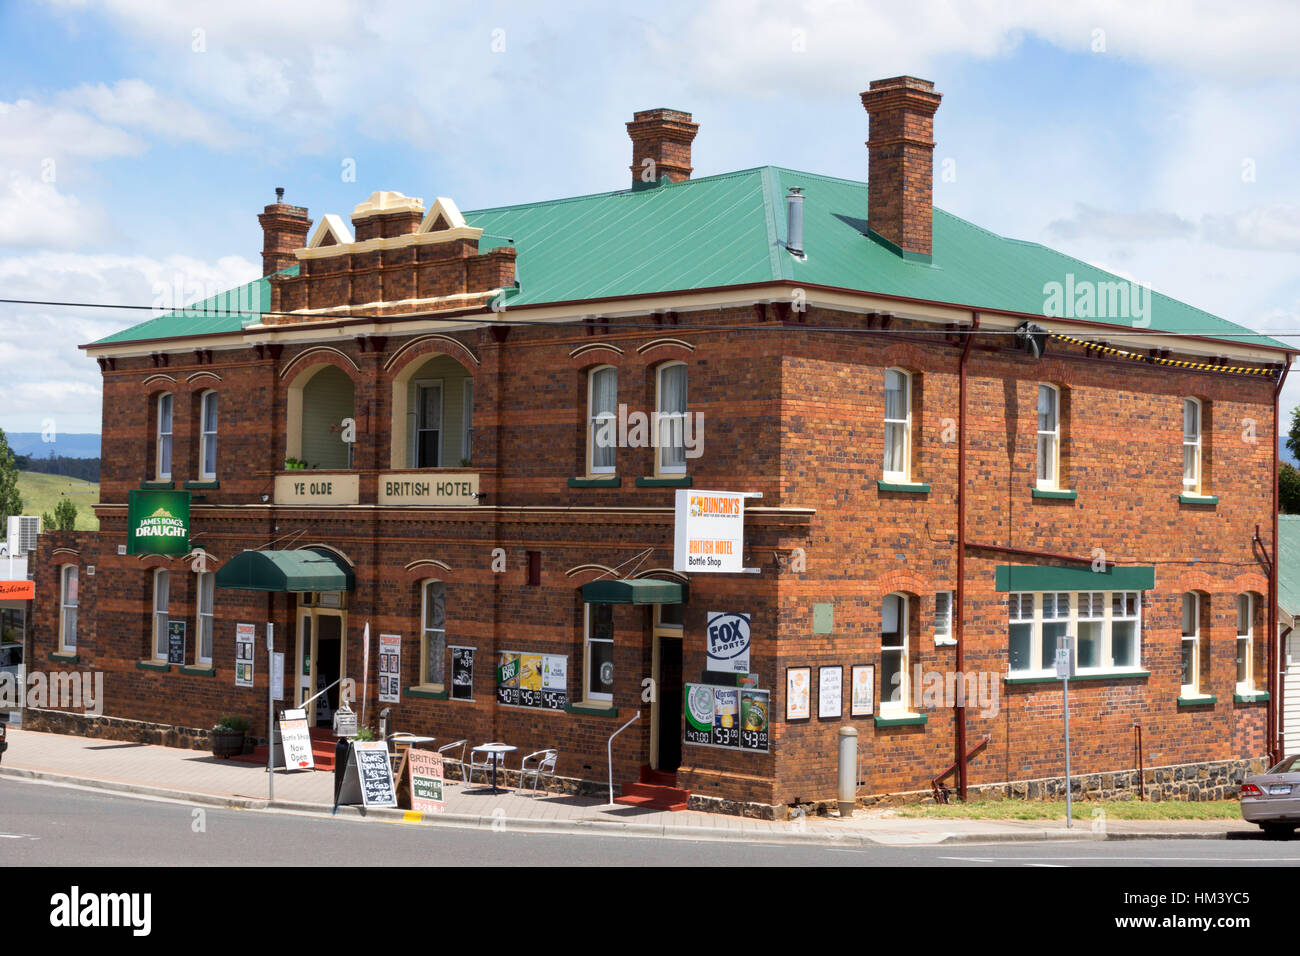 The British Hotel, Deloraine, Tasmania Stock Photo